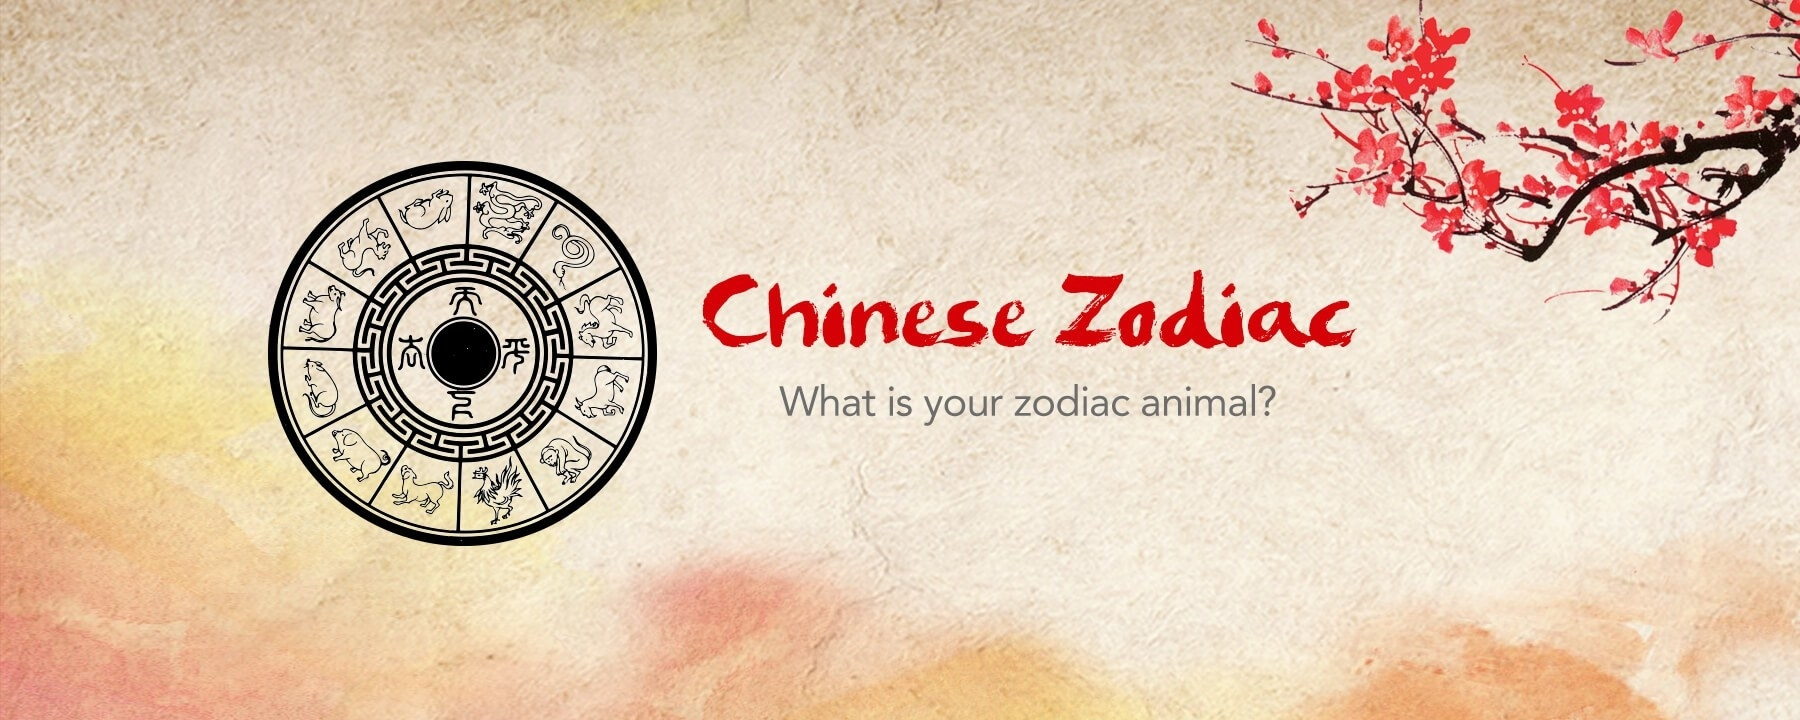 Chinese Zodiac Calendar Pdf | Calendar Printables Free Free Printable Chinese Zodiac Meanings